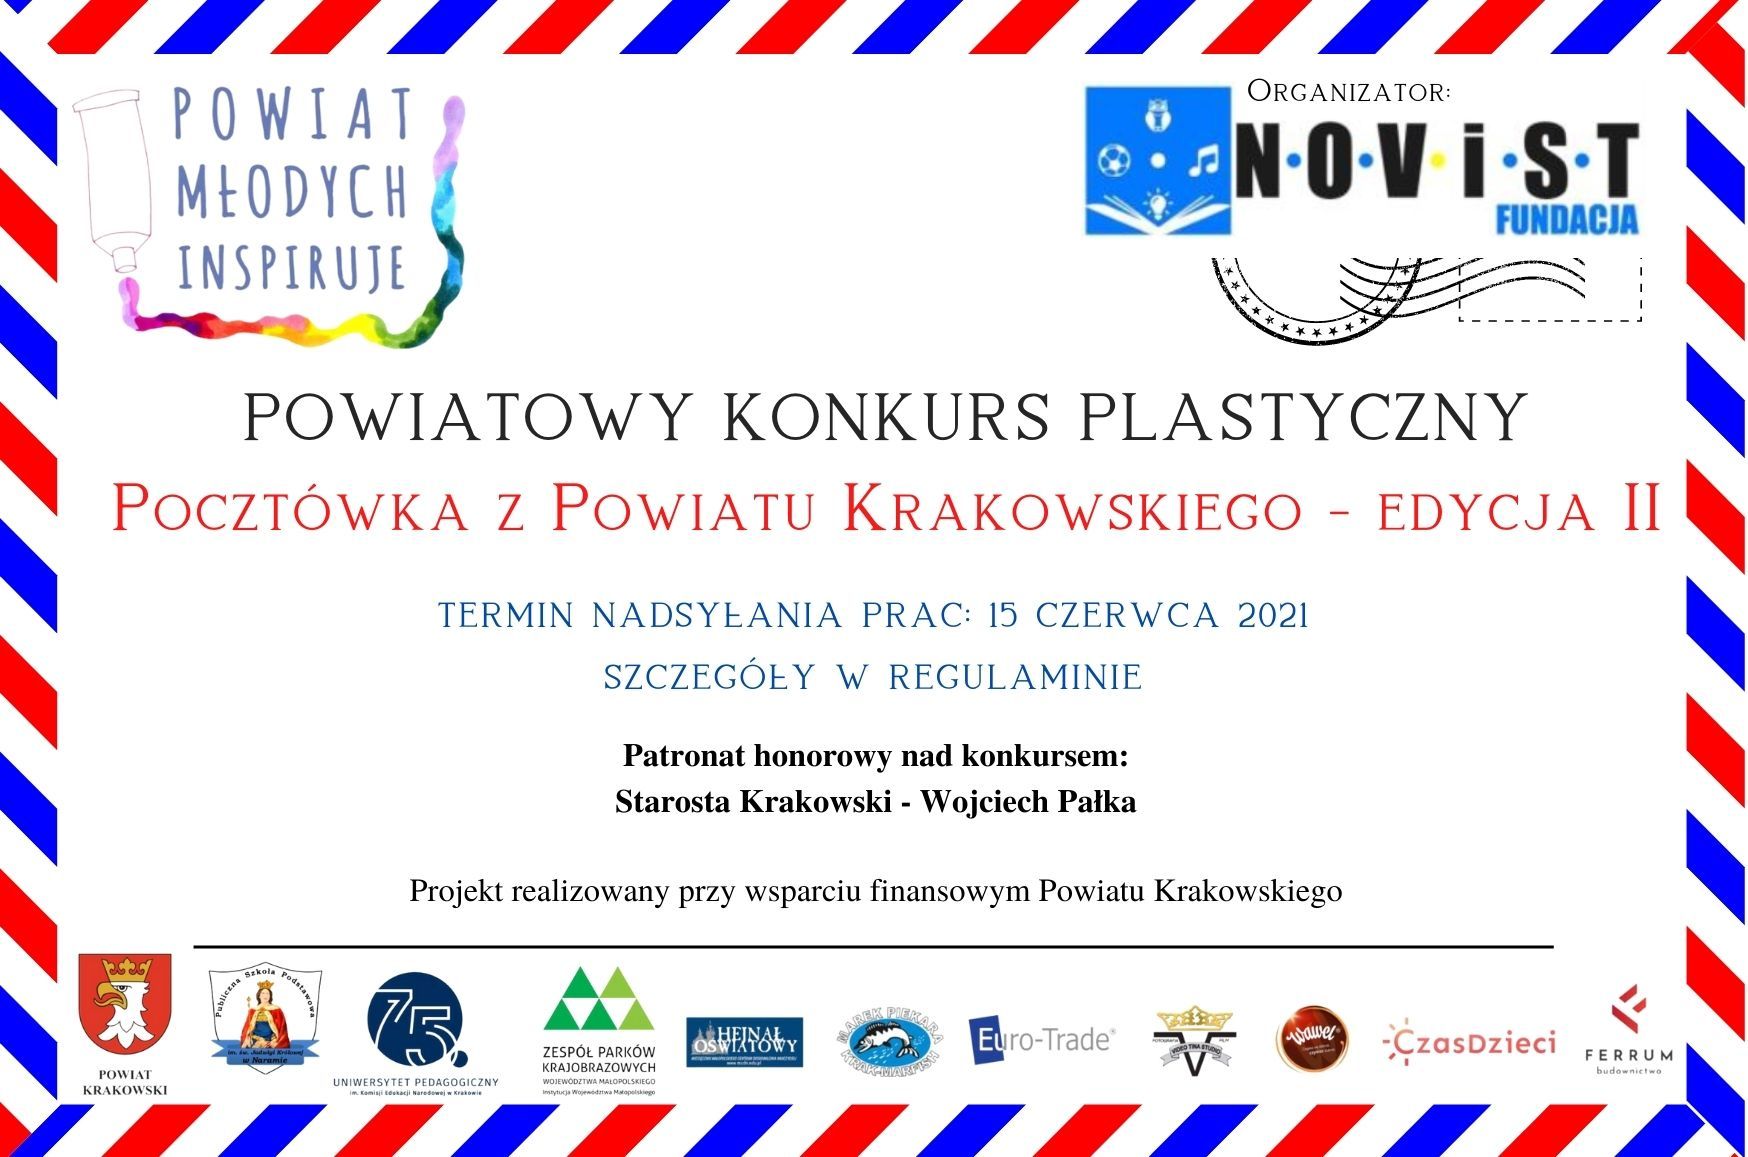 Pocztowka z Powiatu Krakowskiego edycja II2021